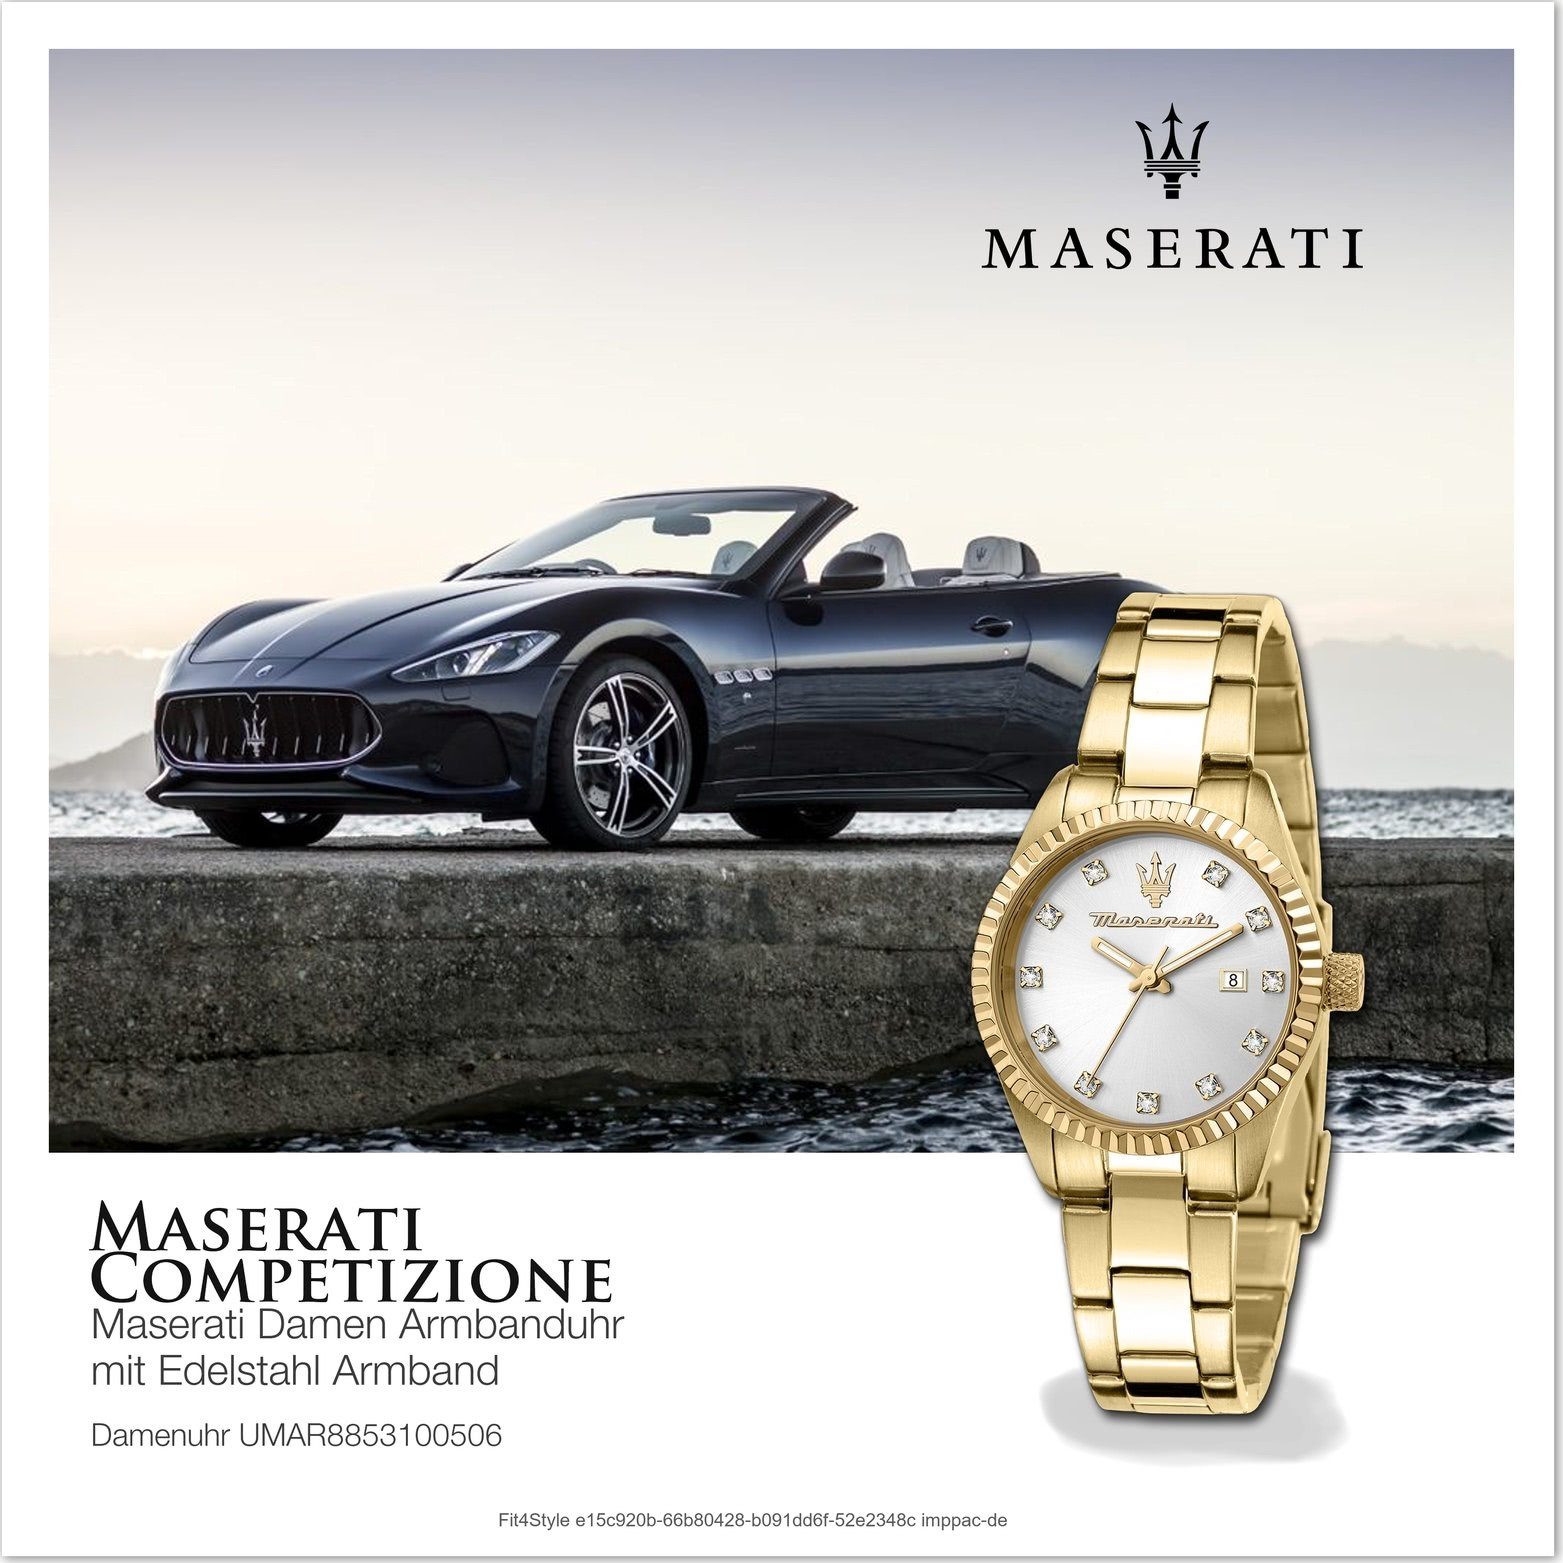 Quarzuhr Edelstahlarmband, Gehäuse, mittel silber (ca. MASERATI Edelstahl 31mm) Maserati Armband-Uhr, rundes Damenuhr